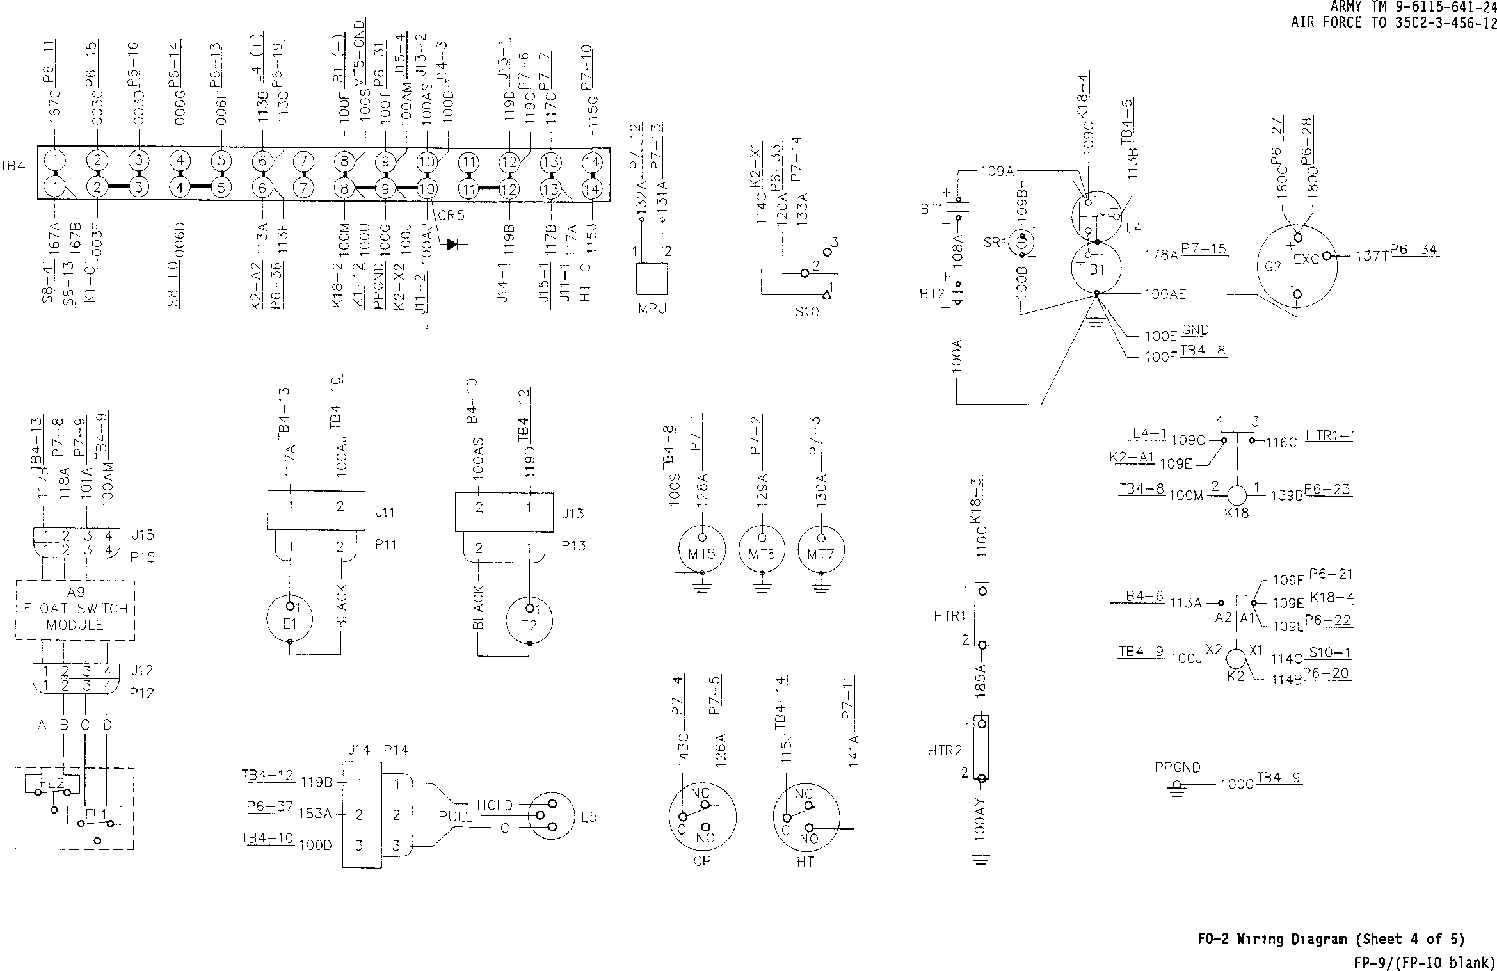 fo-2. wiring diagram (sheet 4 of 5)